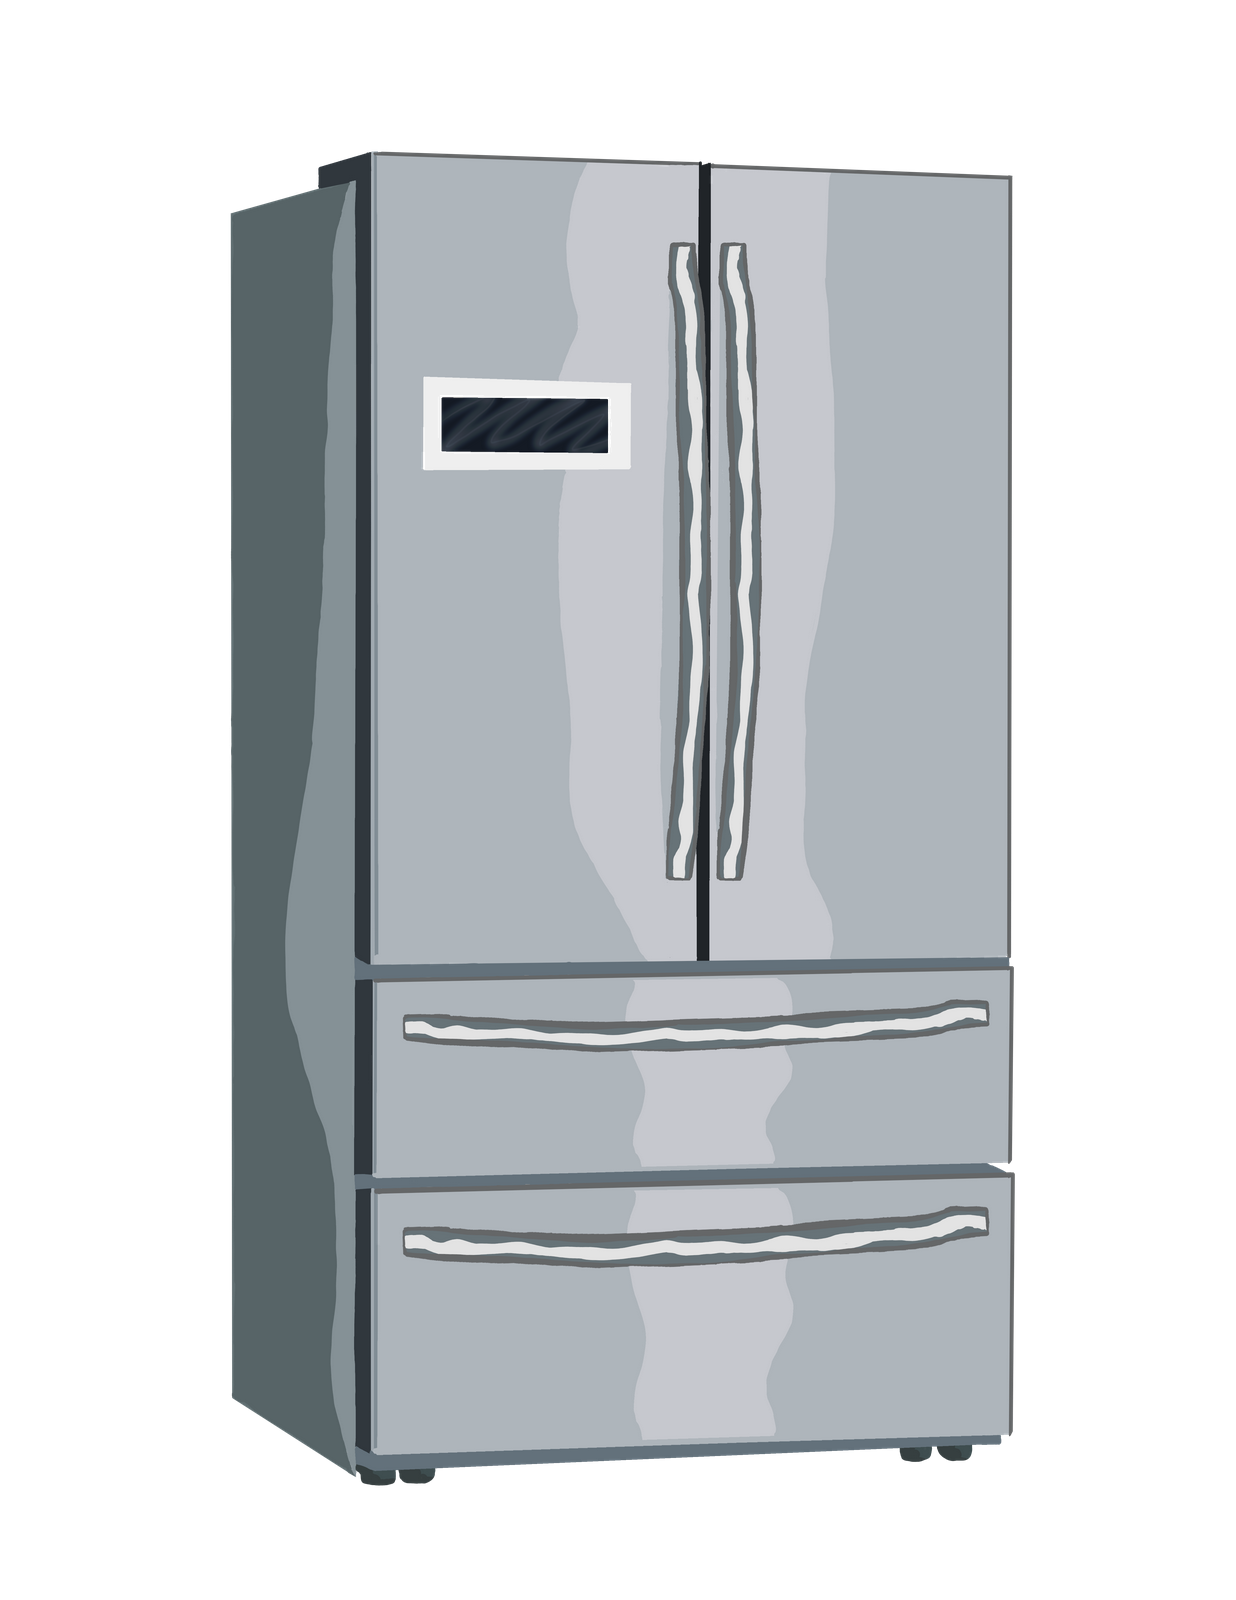 GE Refrigerator Repair In Montreal